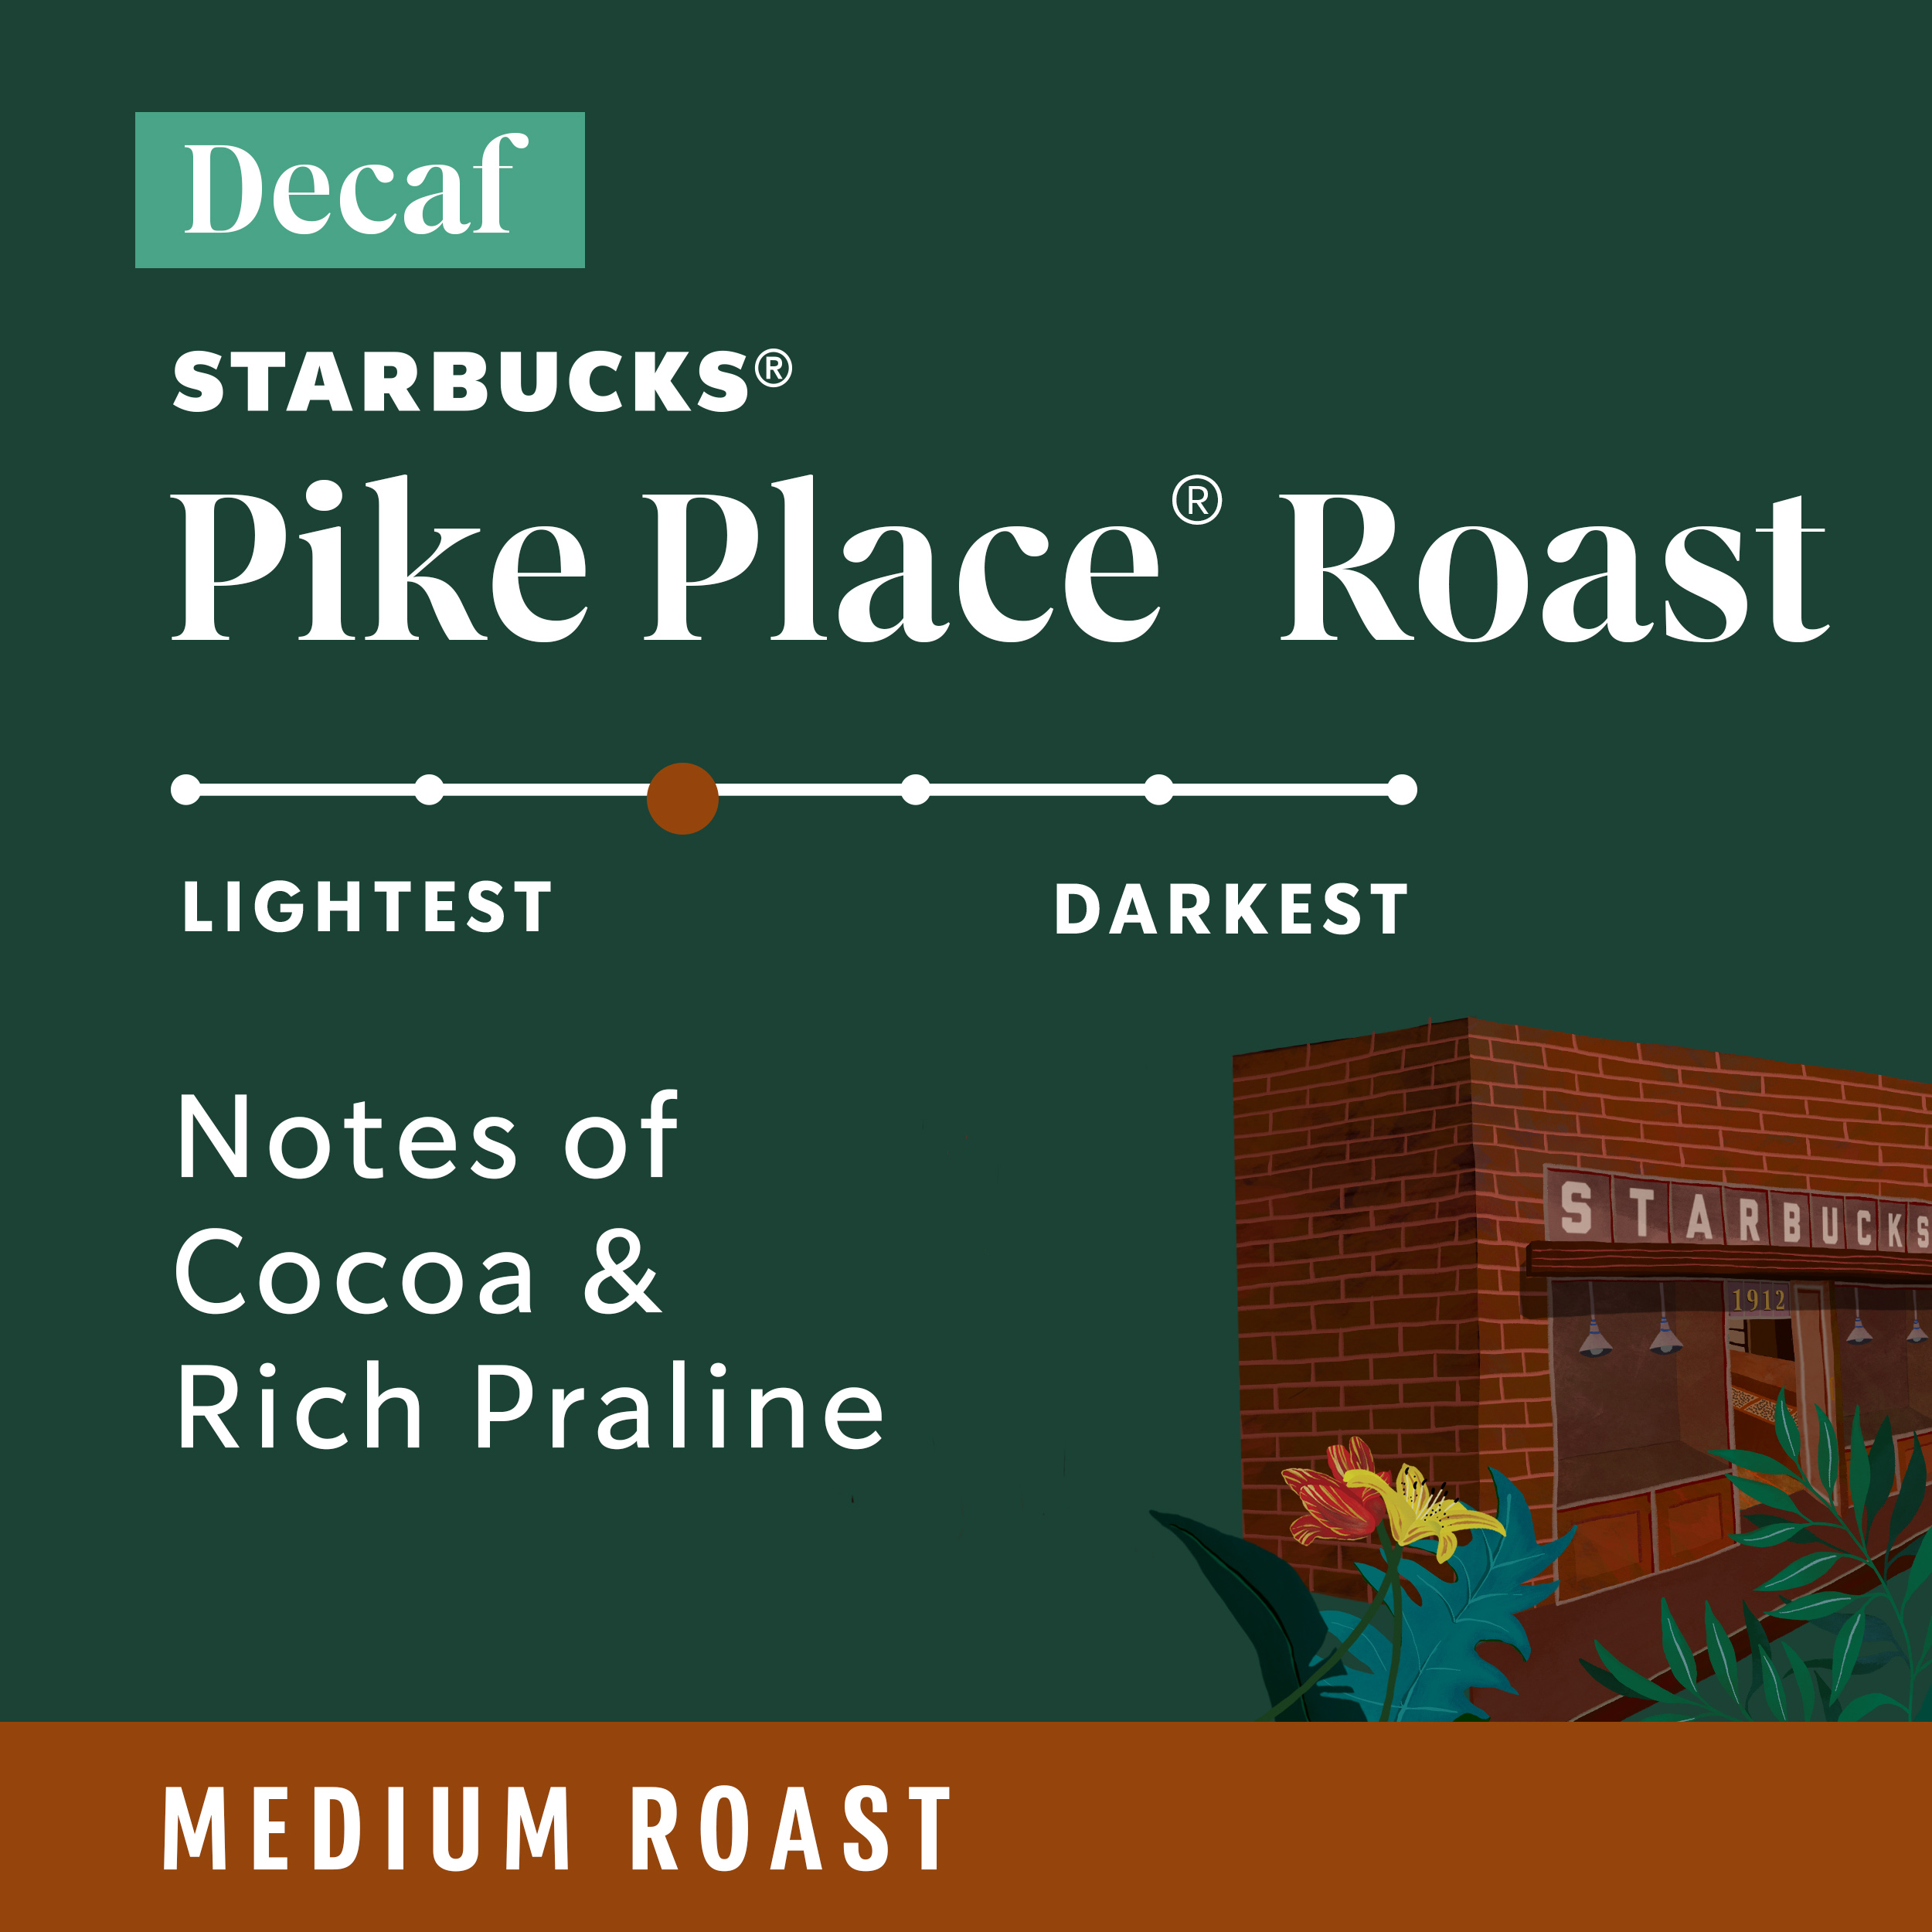 Starbucks Decaf Pike Place Roast Ground Coffee, Medium Roast, 12 oz - image 3 of 8